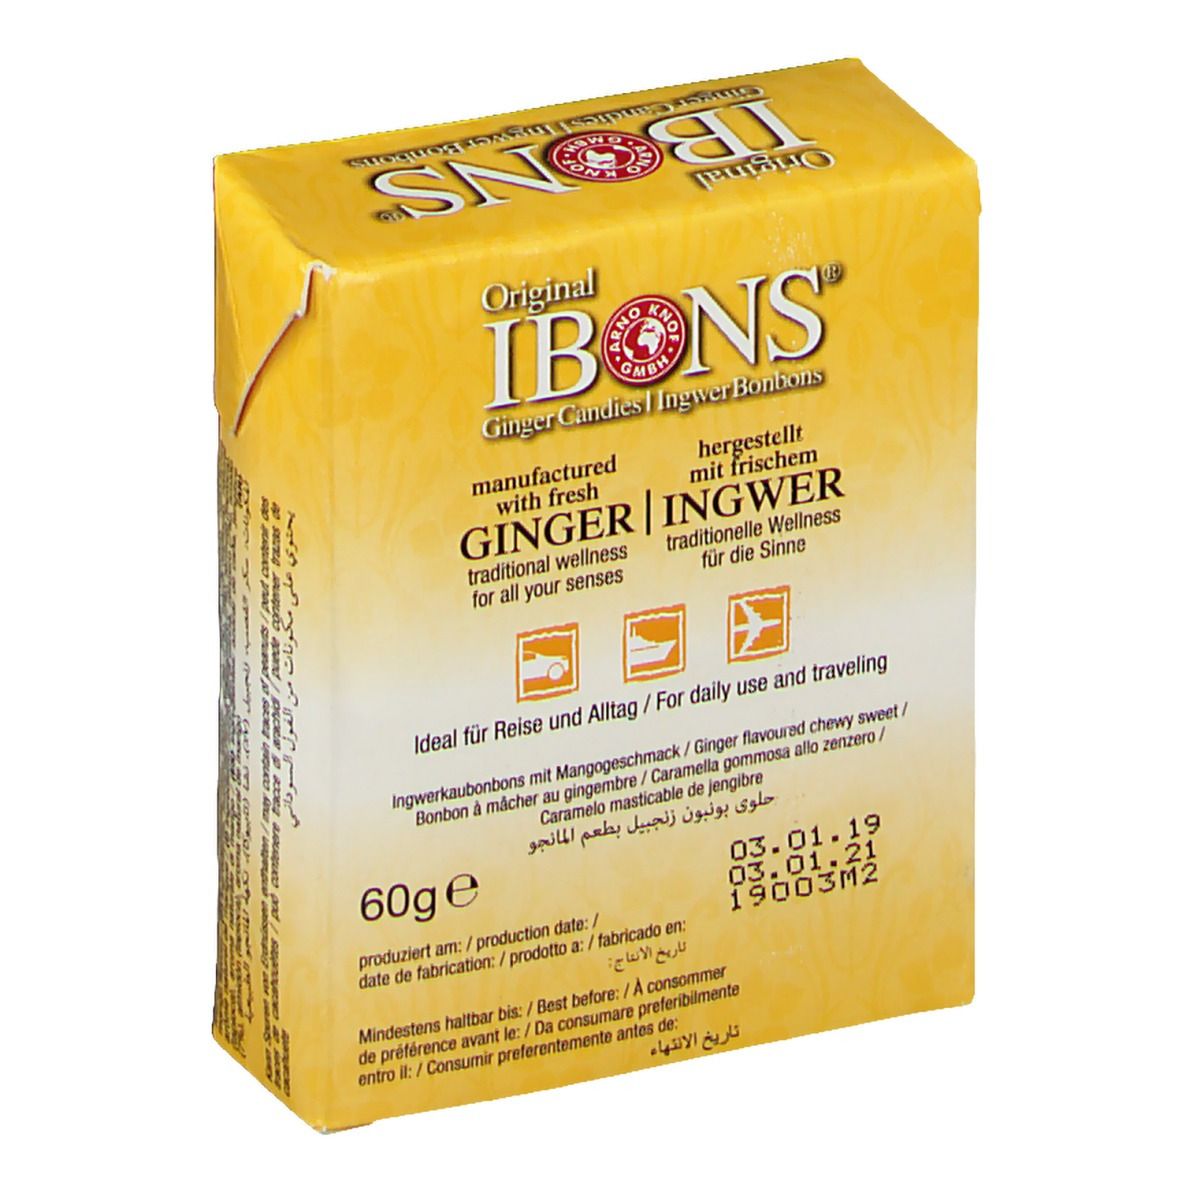 Original IBONS® Ingwer Bonbons Mango